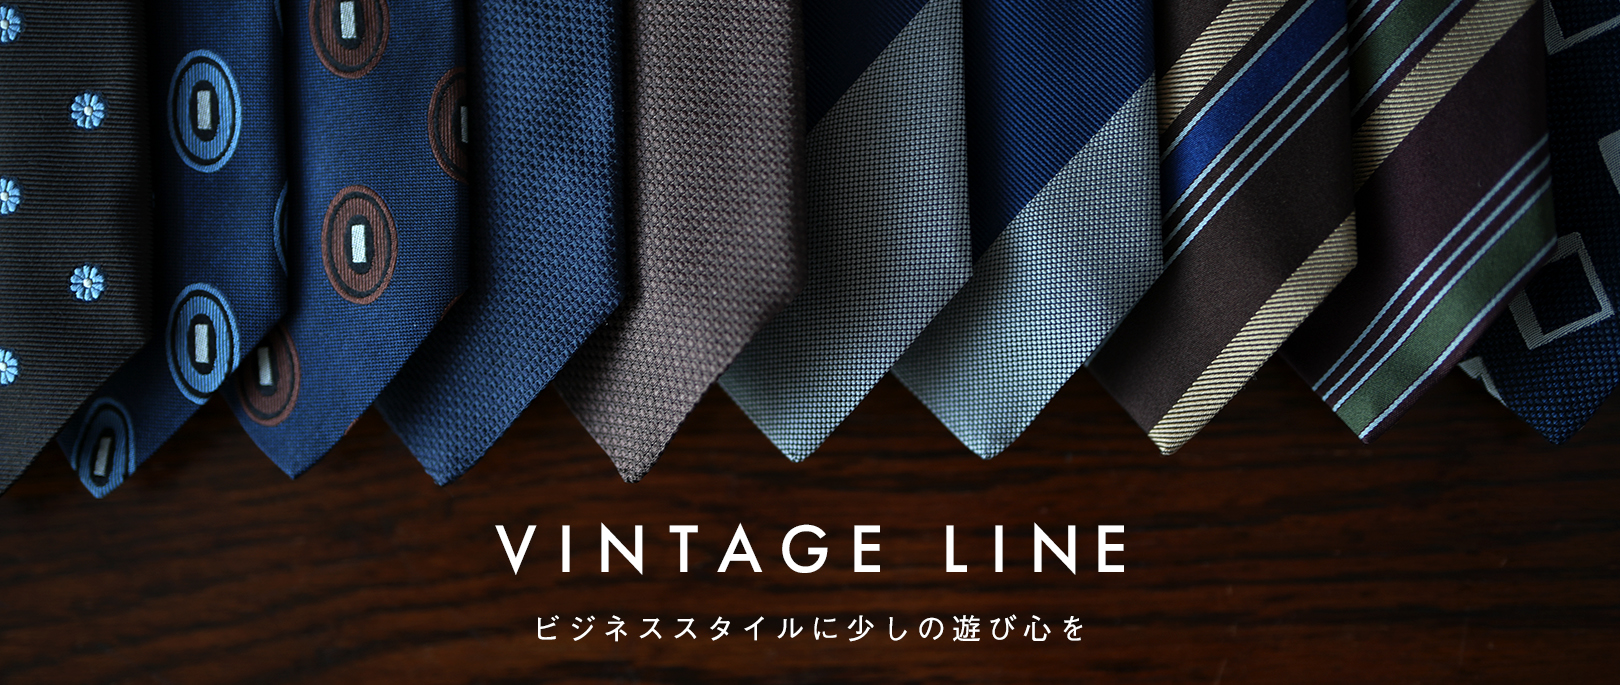 鎌倉シャツ ネクタイ VINTAGE LINE | メーカーズシャツ鎌倉 公式通販